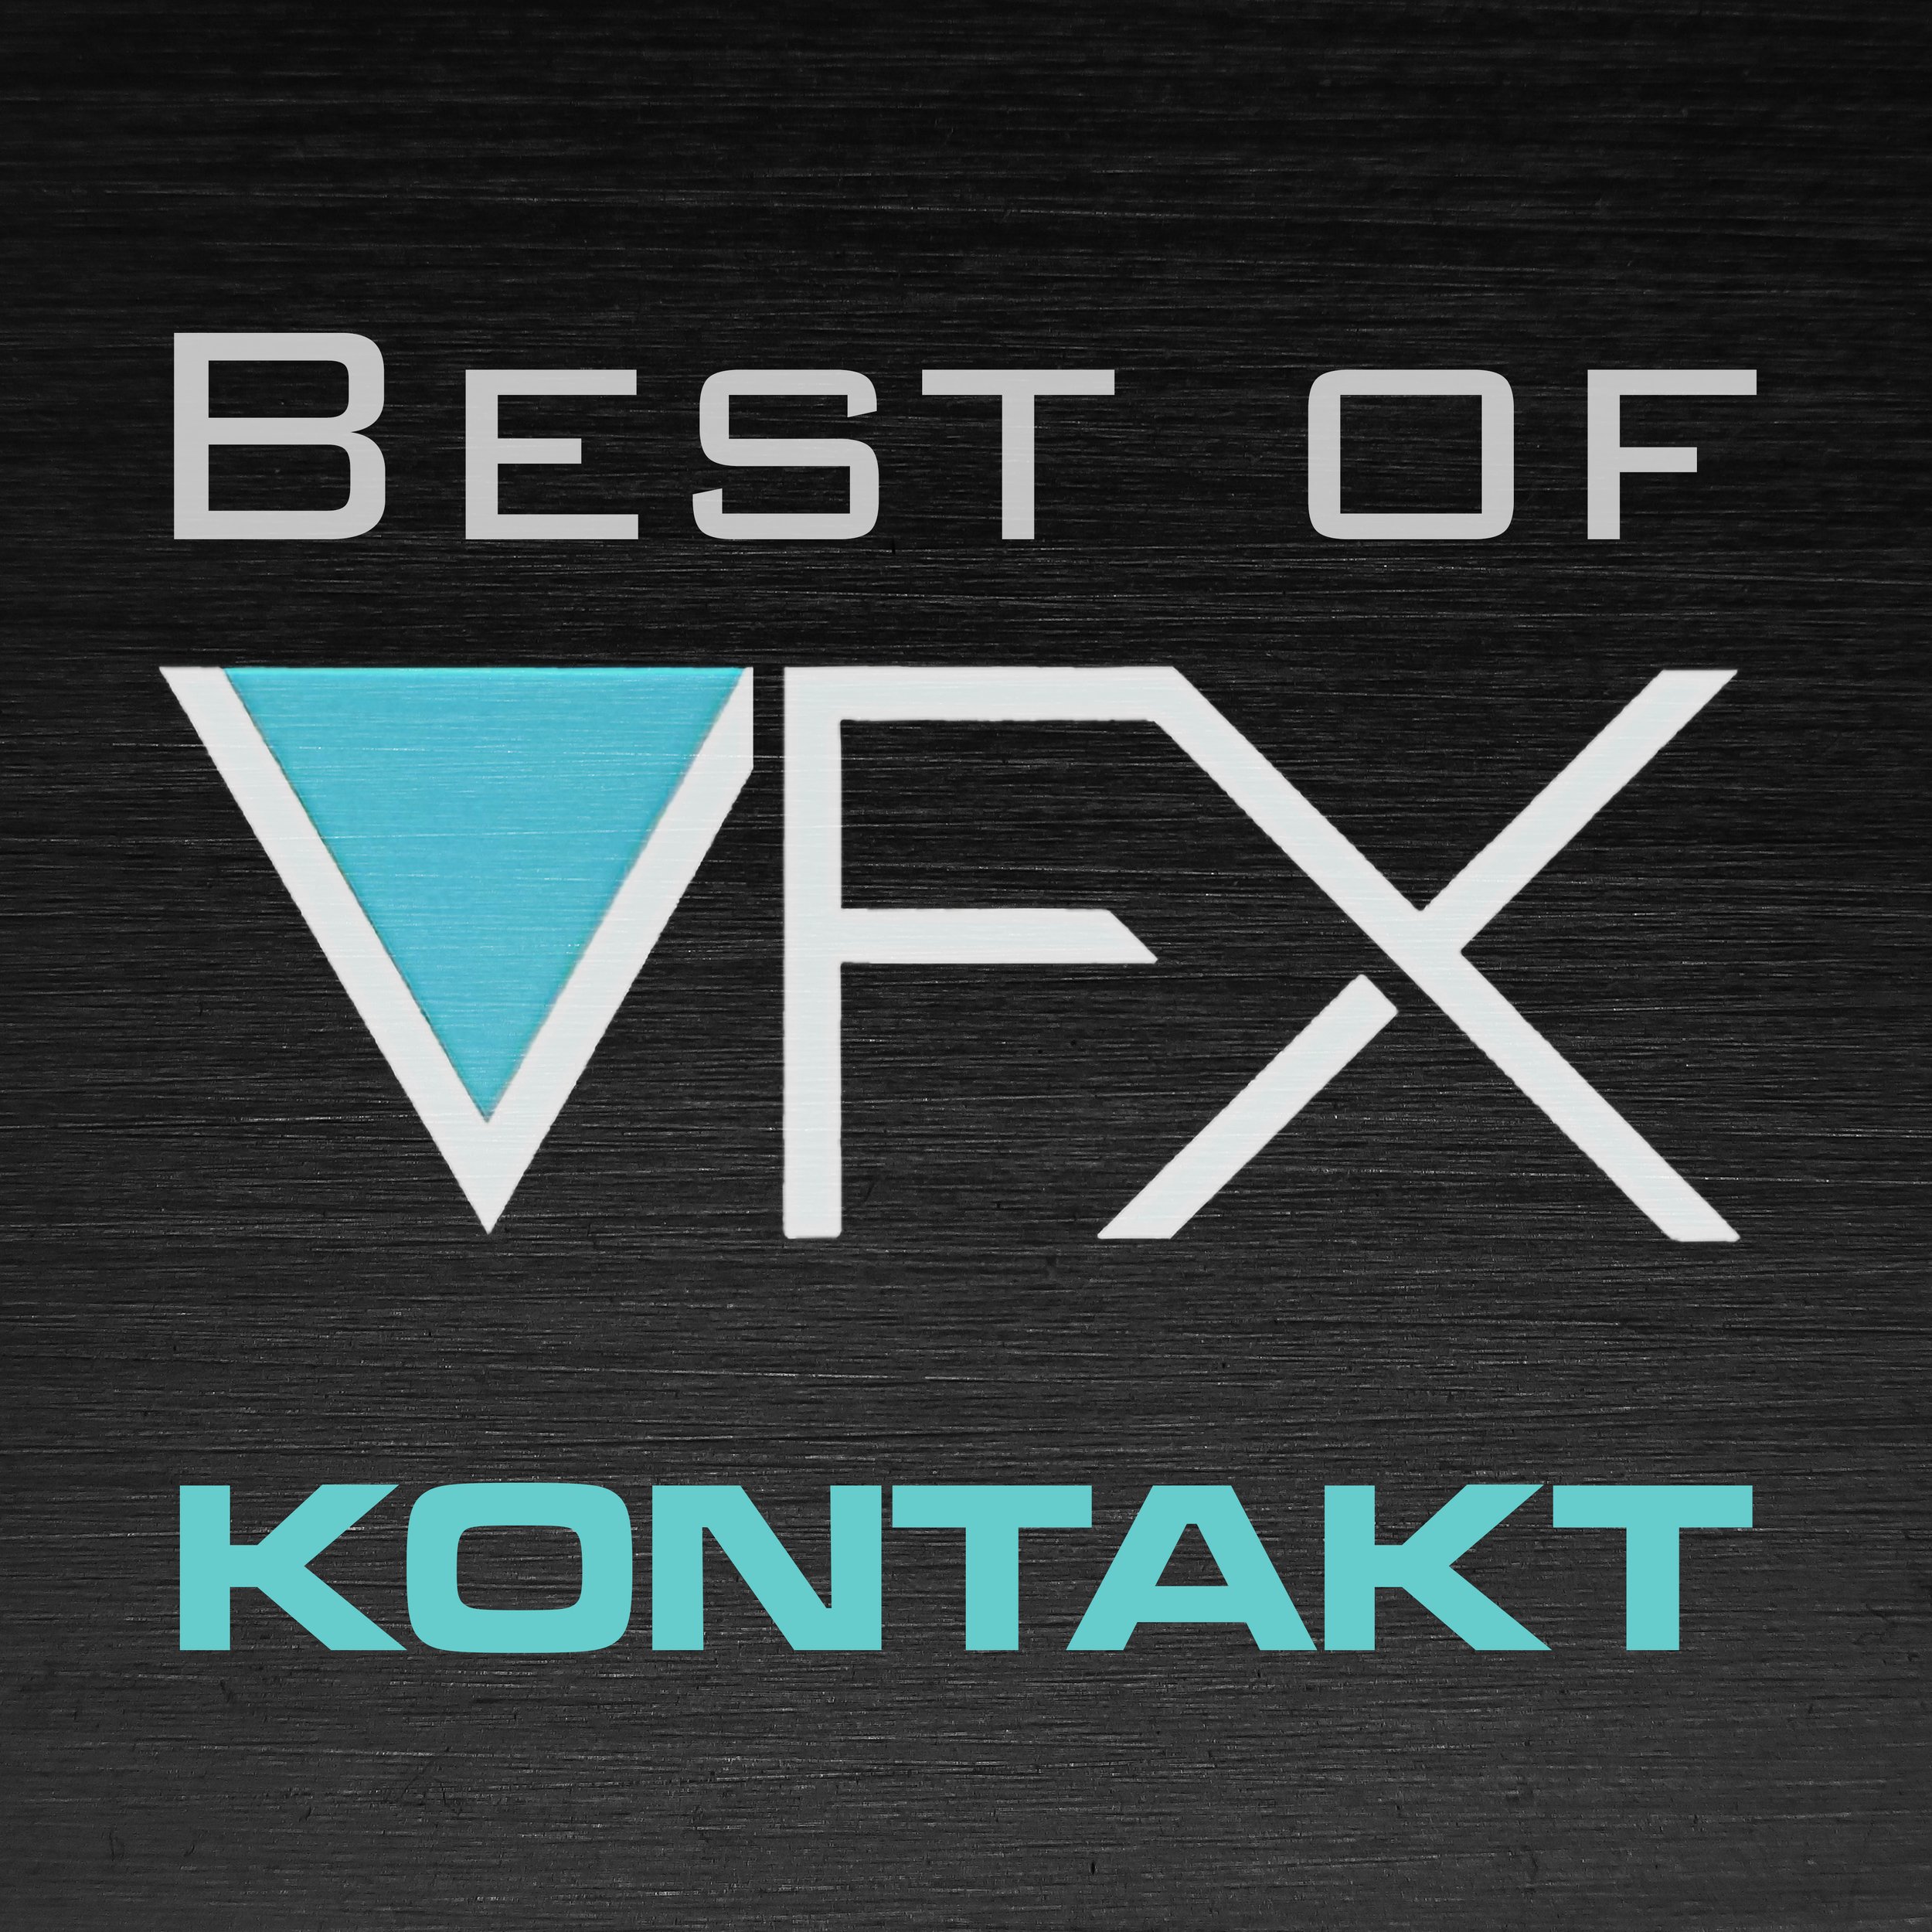 Best of VFX Kontakt Logo 2000.jpg